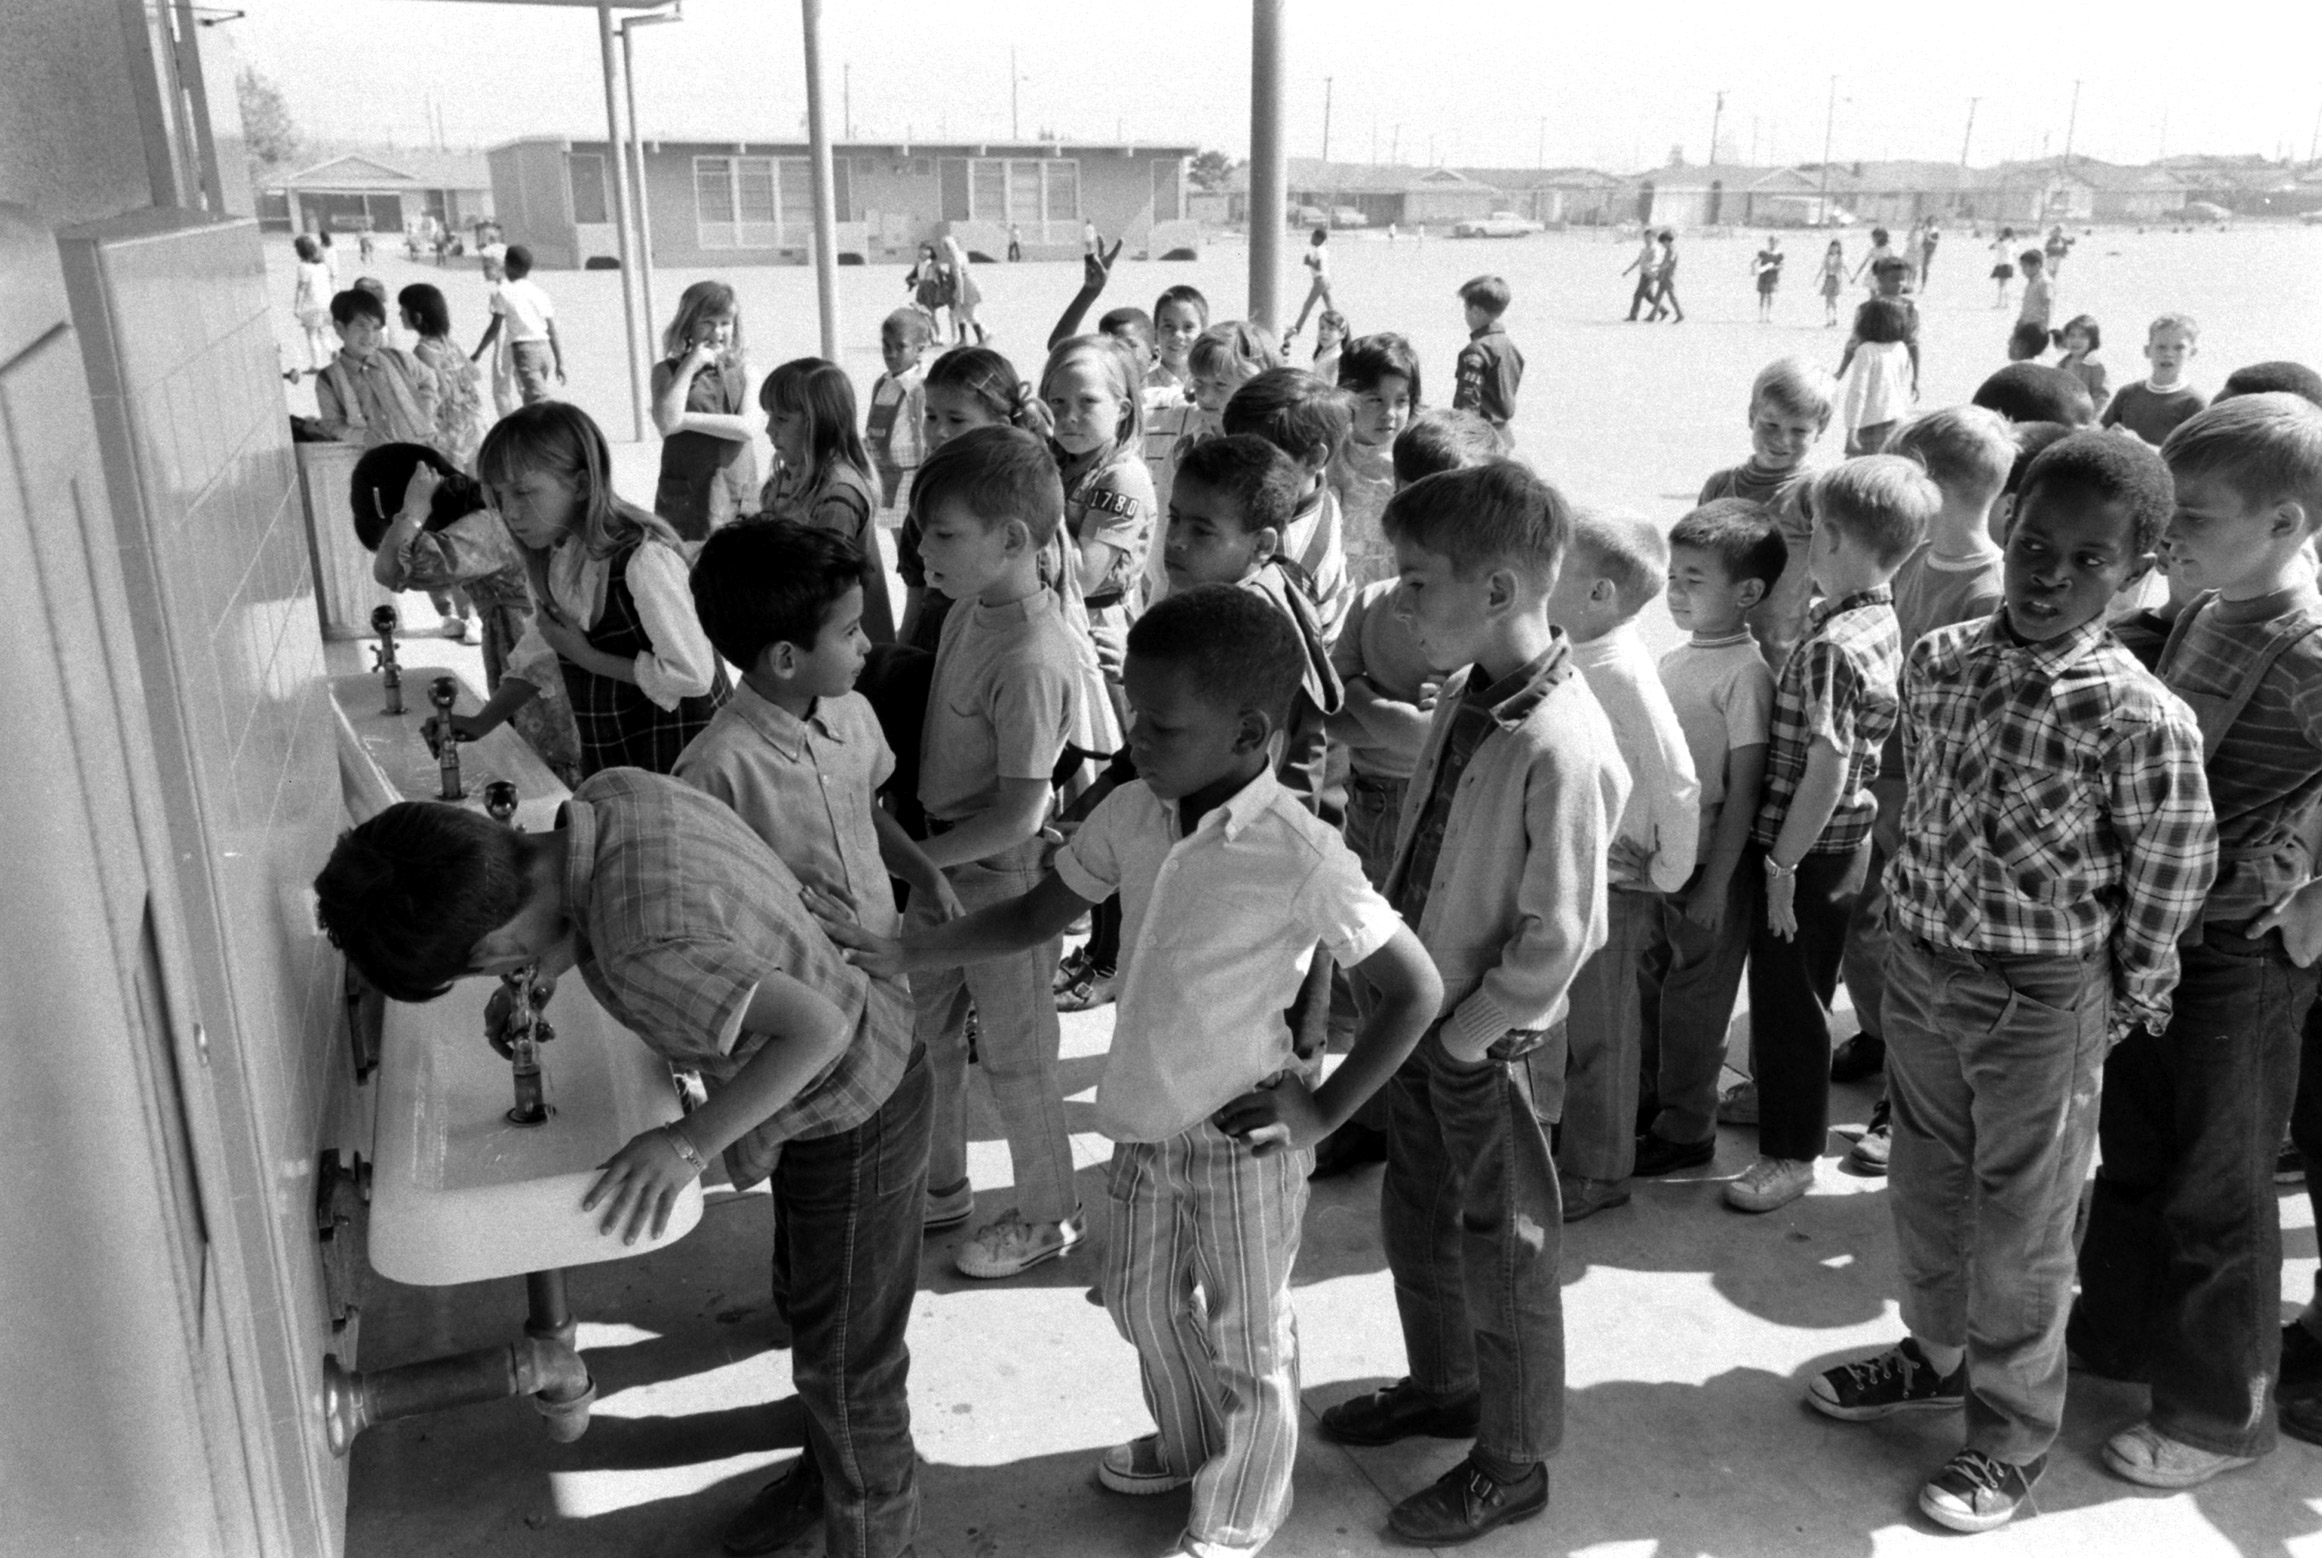 Leapwood Avenue Elementary School, 1970